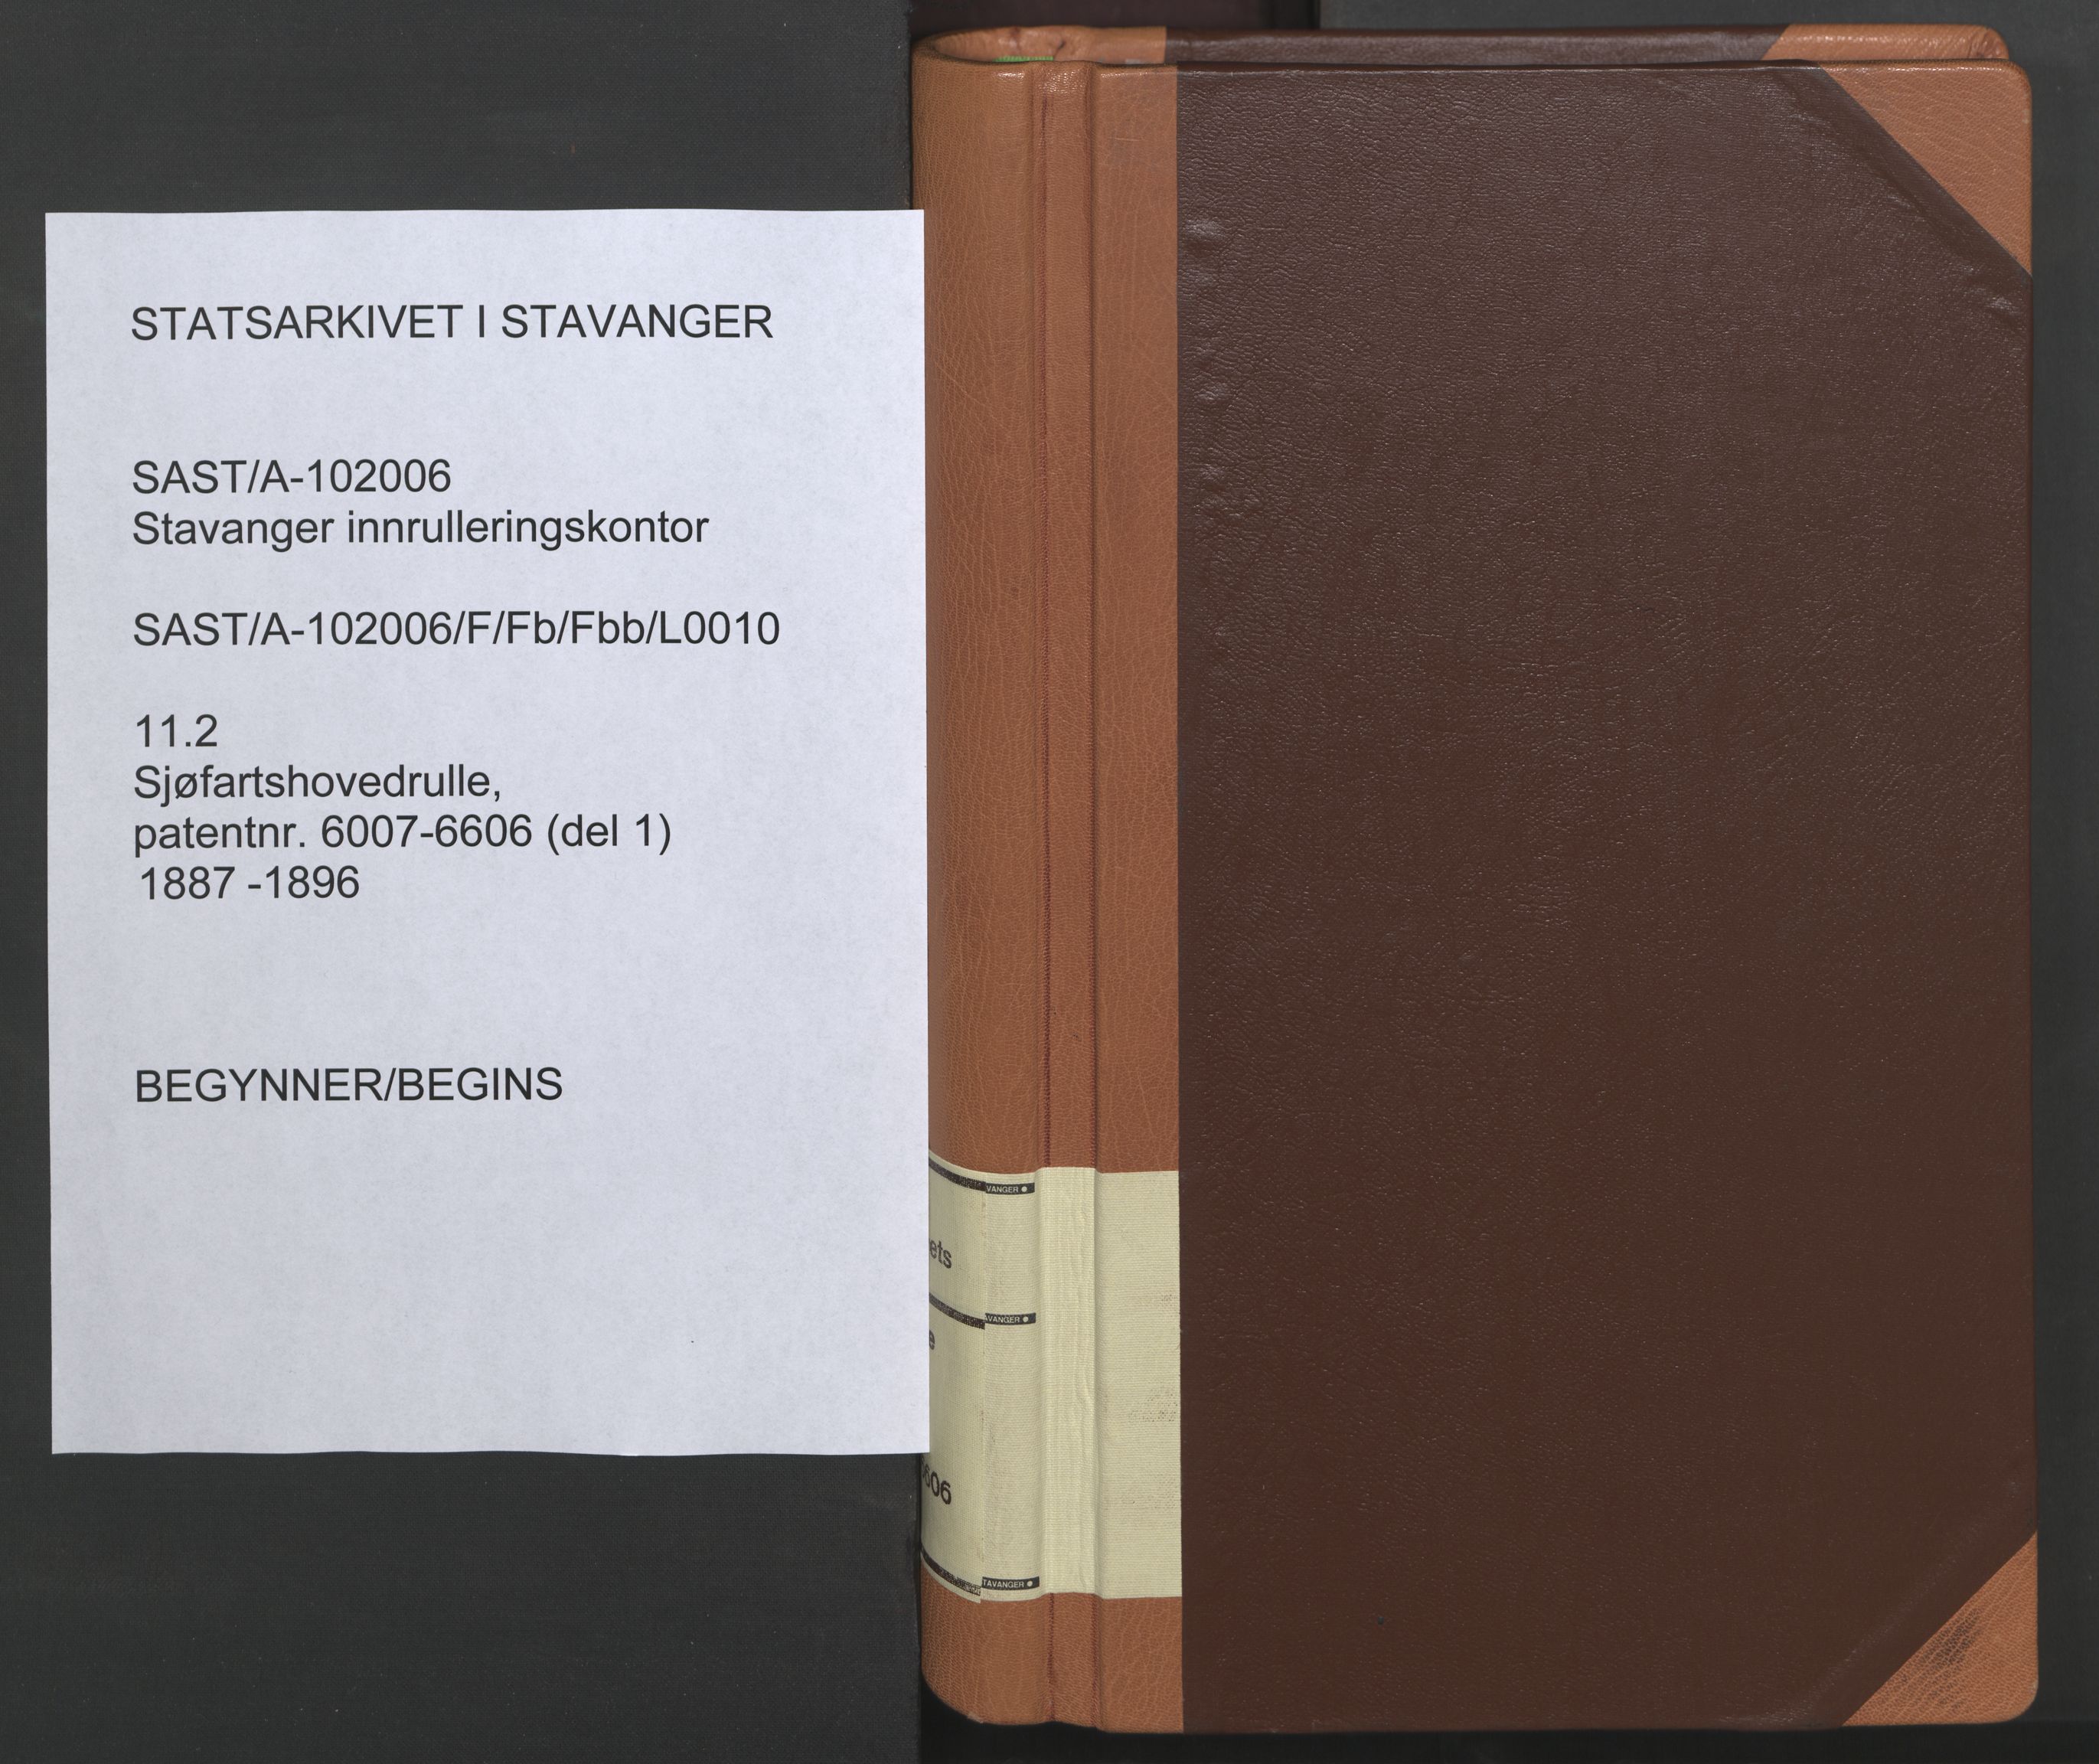 Stavanger sjømannskontor, SAST/A-102006/F/Fb/Fbb/L0010: Sjøfartshovedrulle, patentnr. 6007-6606 (del 1), 1887-1896, p. 1